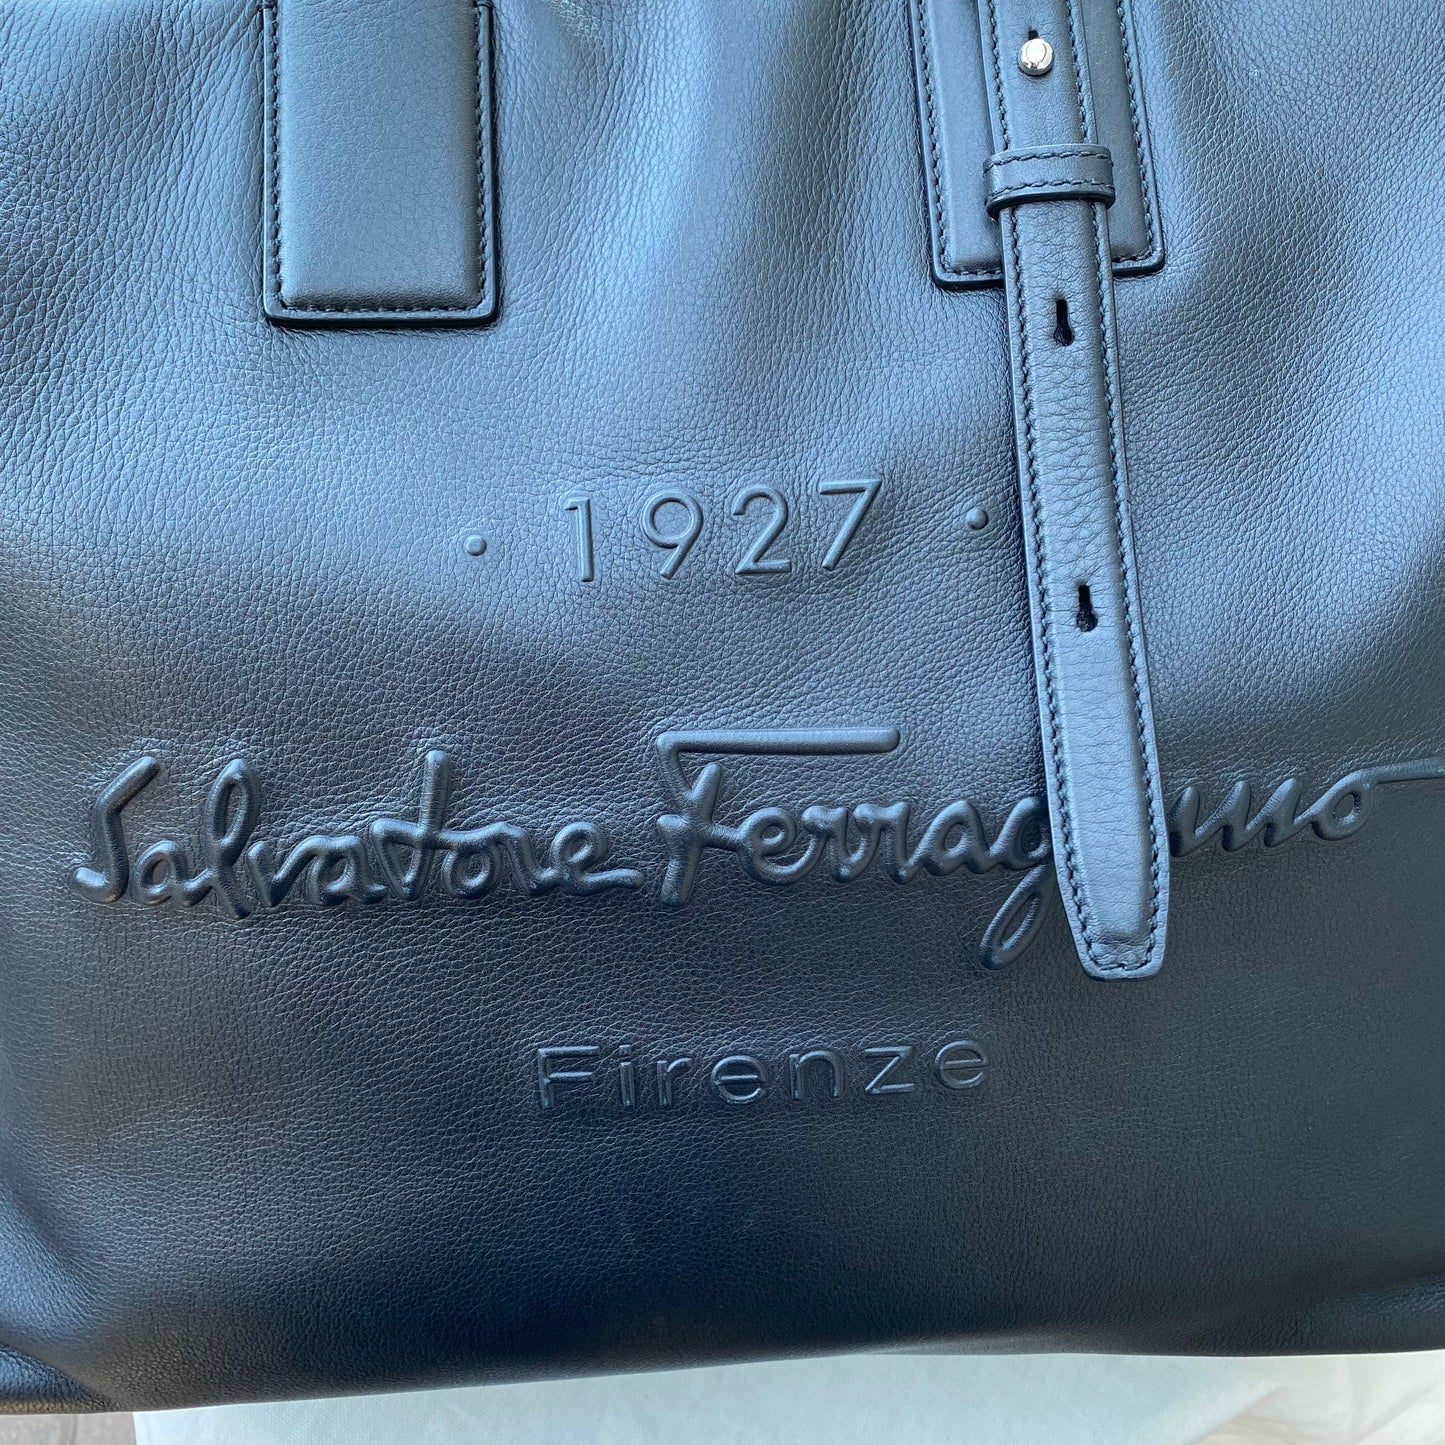 Salvatore Ferragamo Large Soft Leather Tote